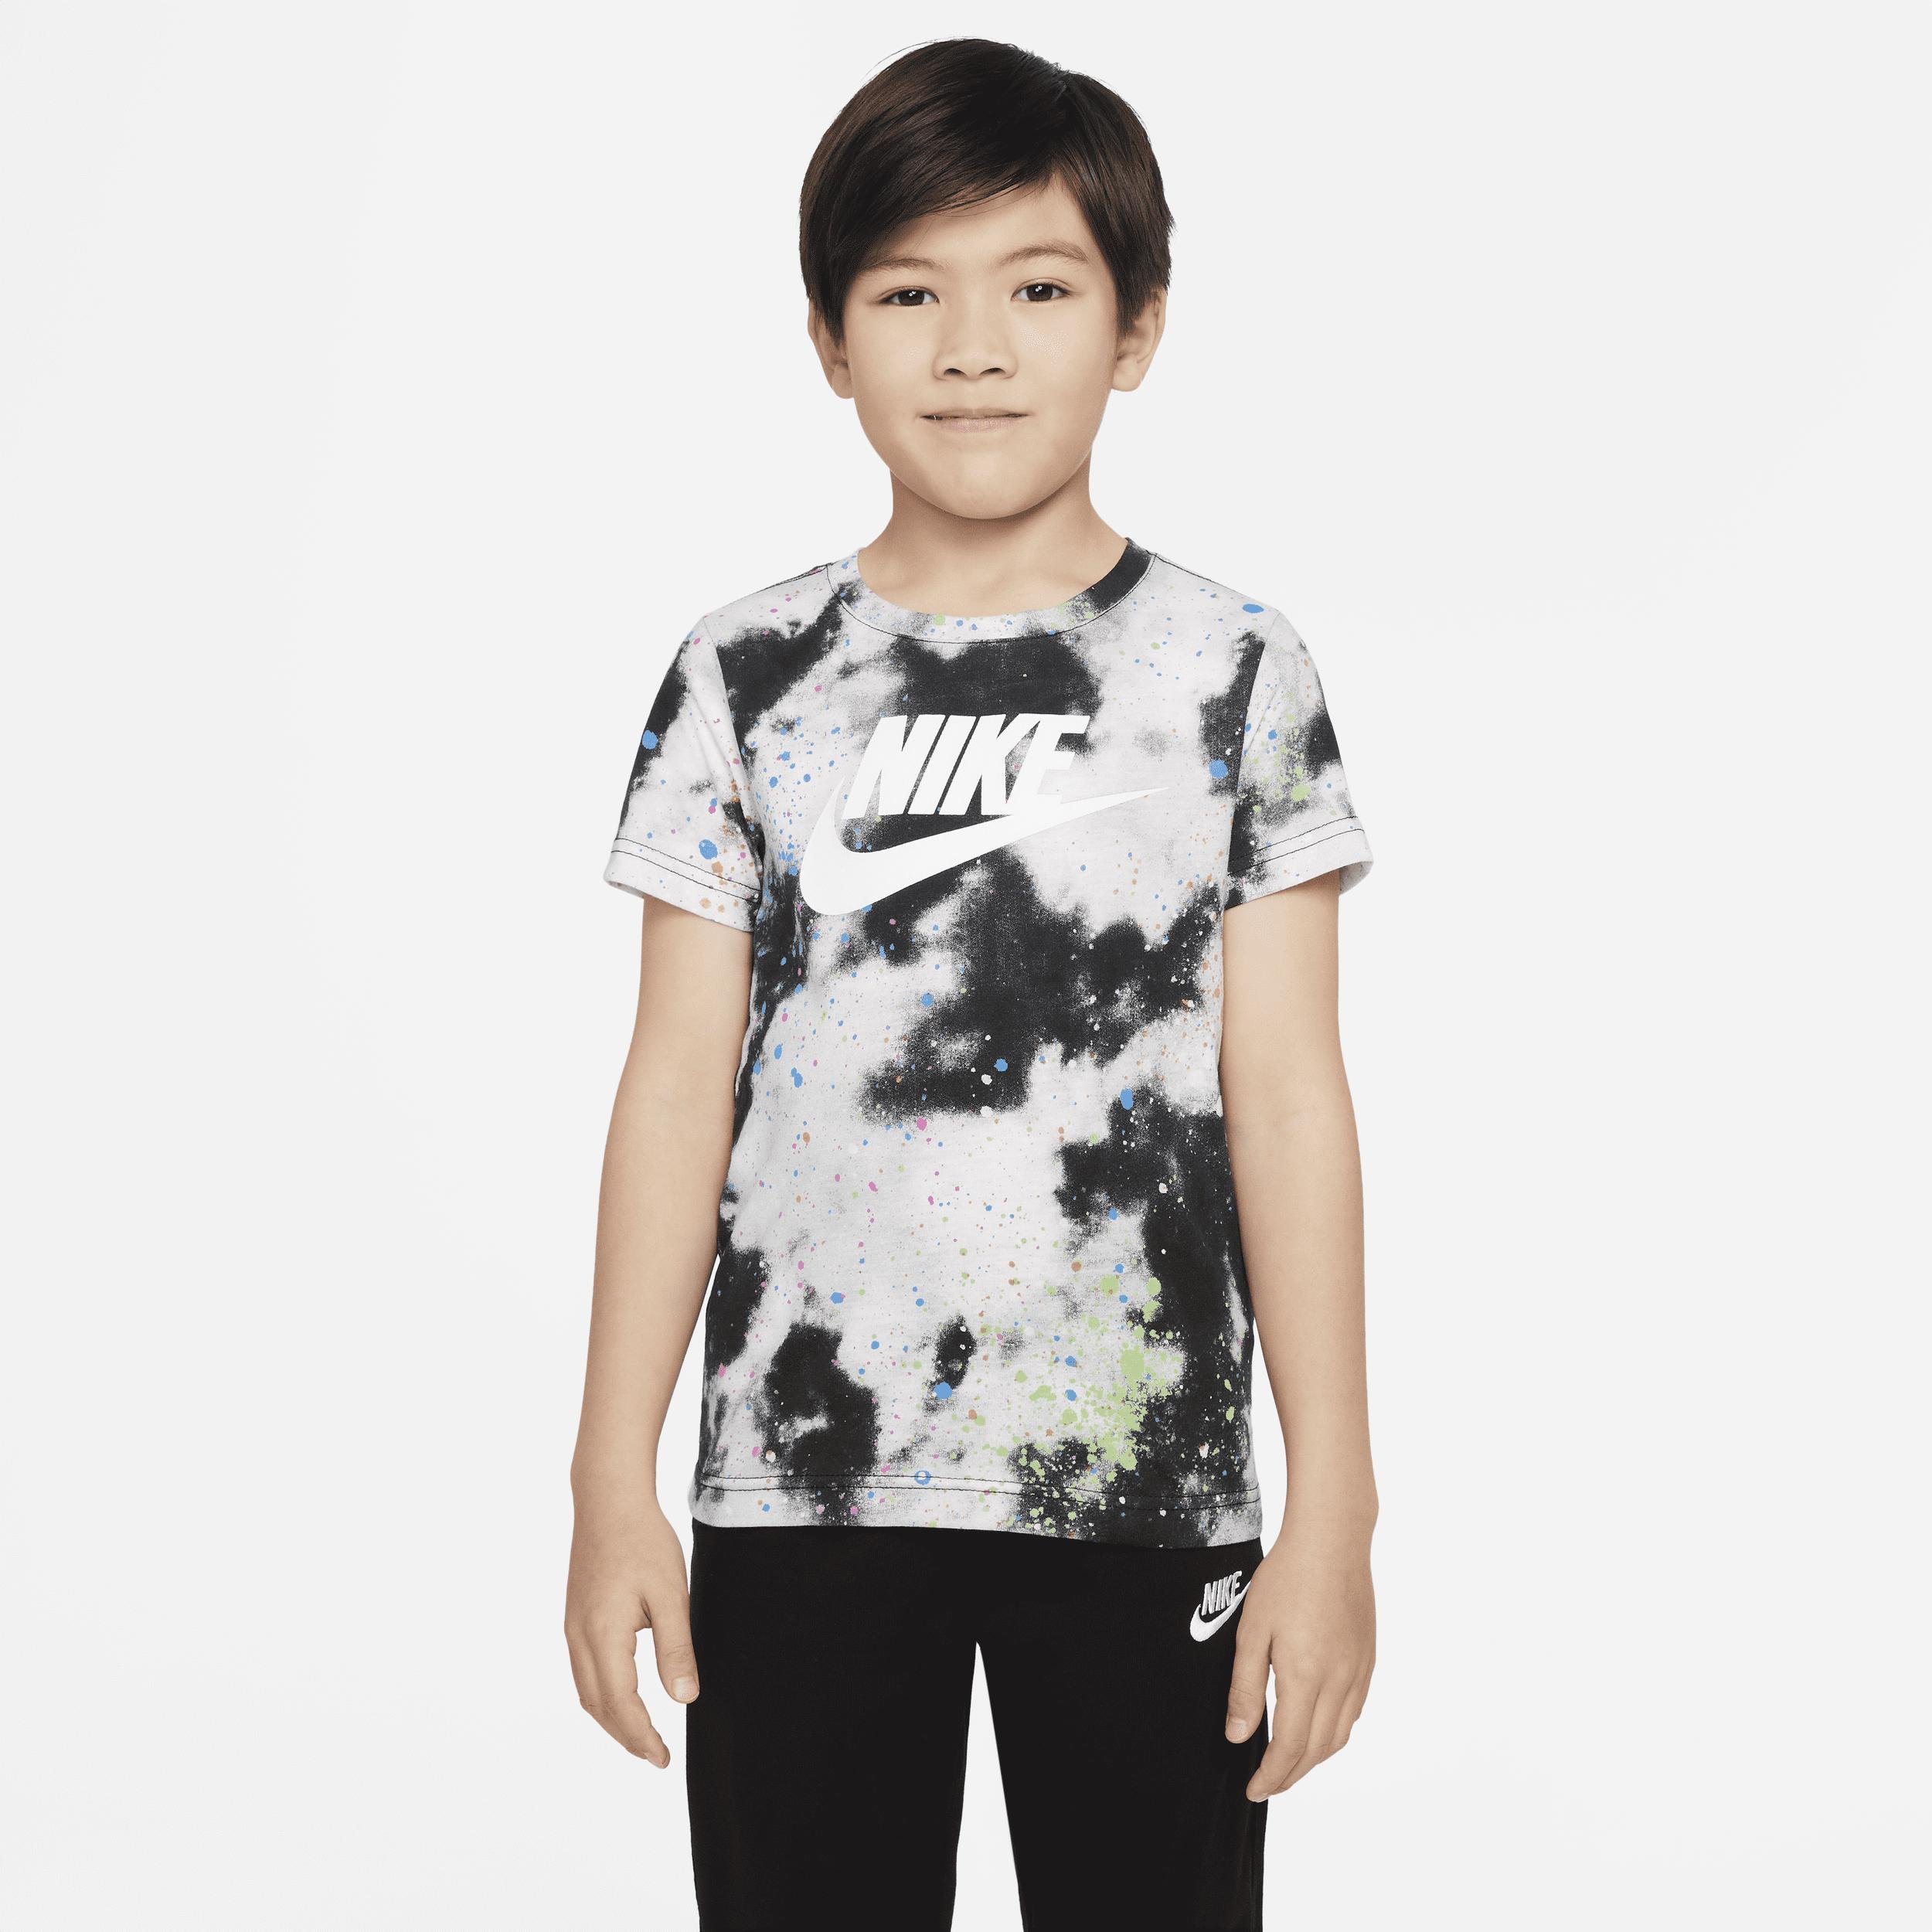 Nike Little Kids' T-Shirt by NIKE